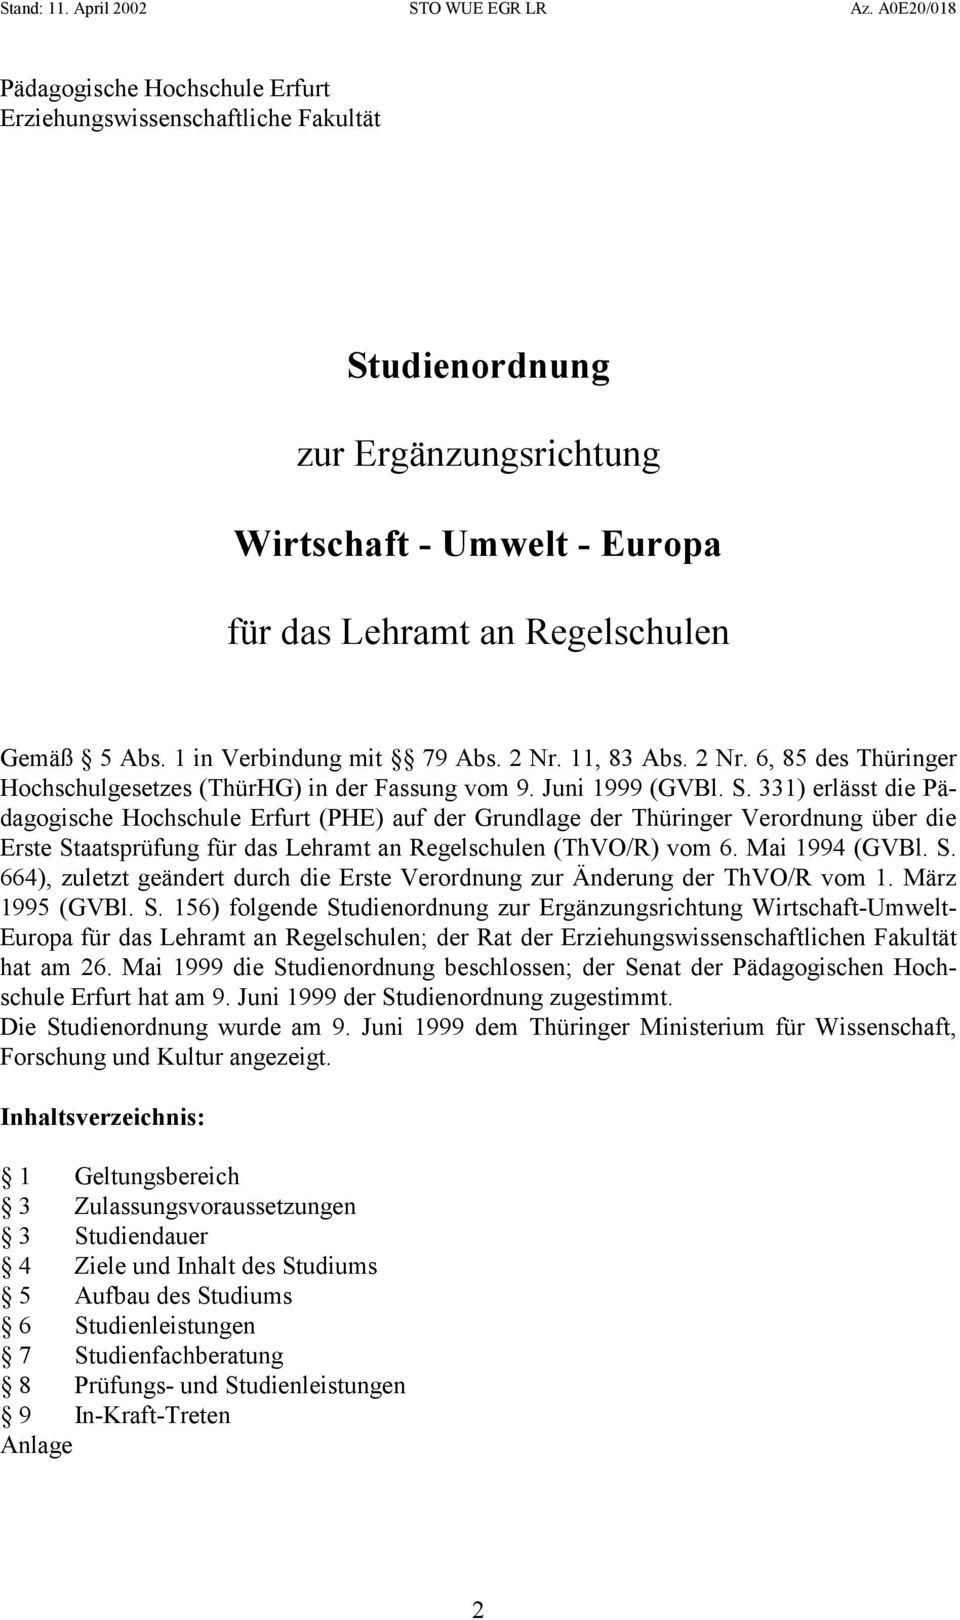 331) erlässt die Pädagogische Hochschule Erfurt (PHE) auf der Grundlage der Thüringer Verordnung über die Erste Staatsprüfung für das Lehramt an Regelschulen (ThVO/R) vom 6. Mai 1994 (GVBl. S. 664), zuletzt geändert durch die Erste Verordnung zur Änderung der ThVO/R vom 1.